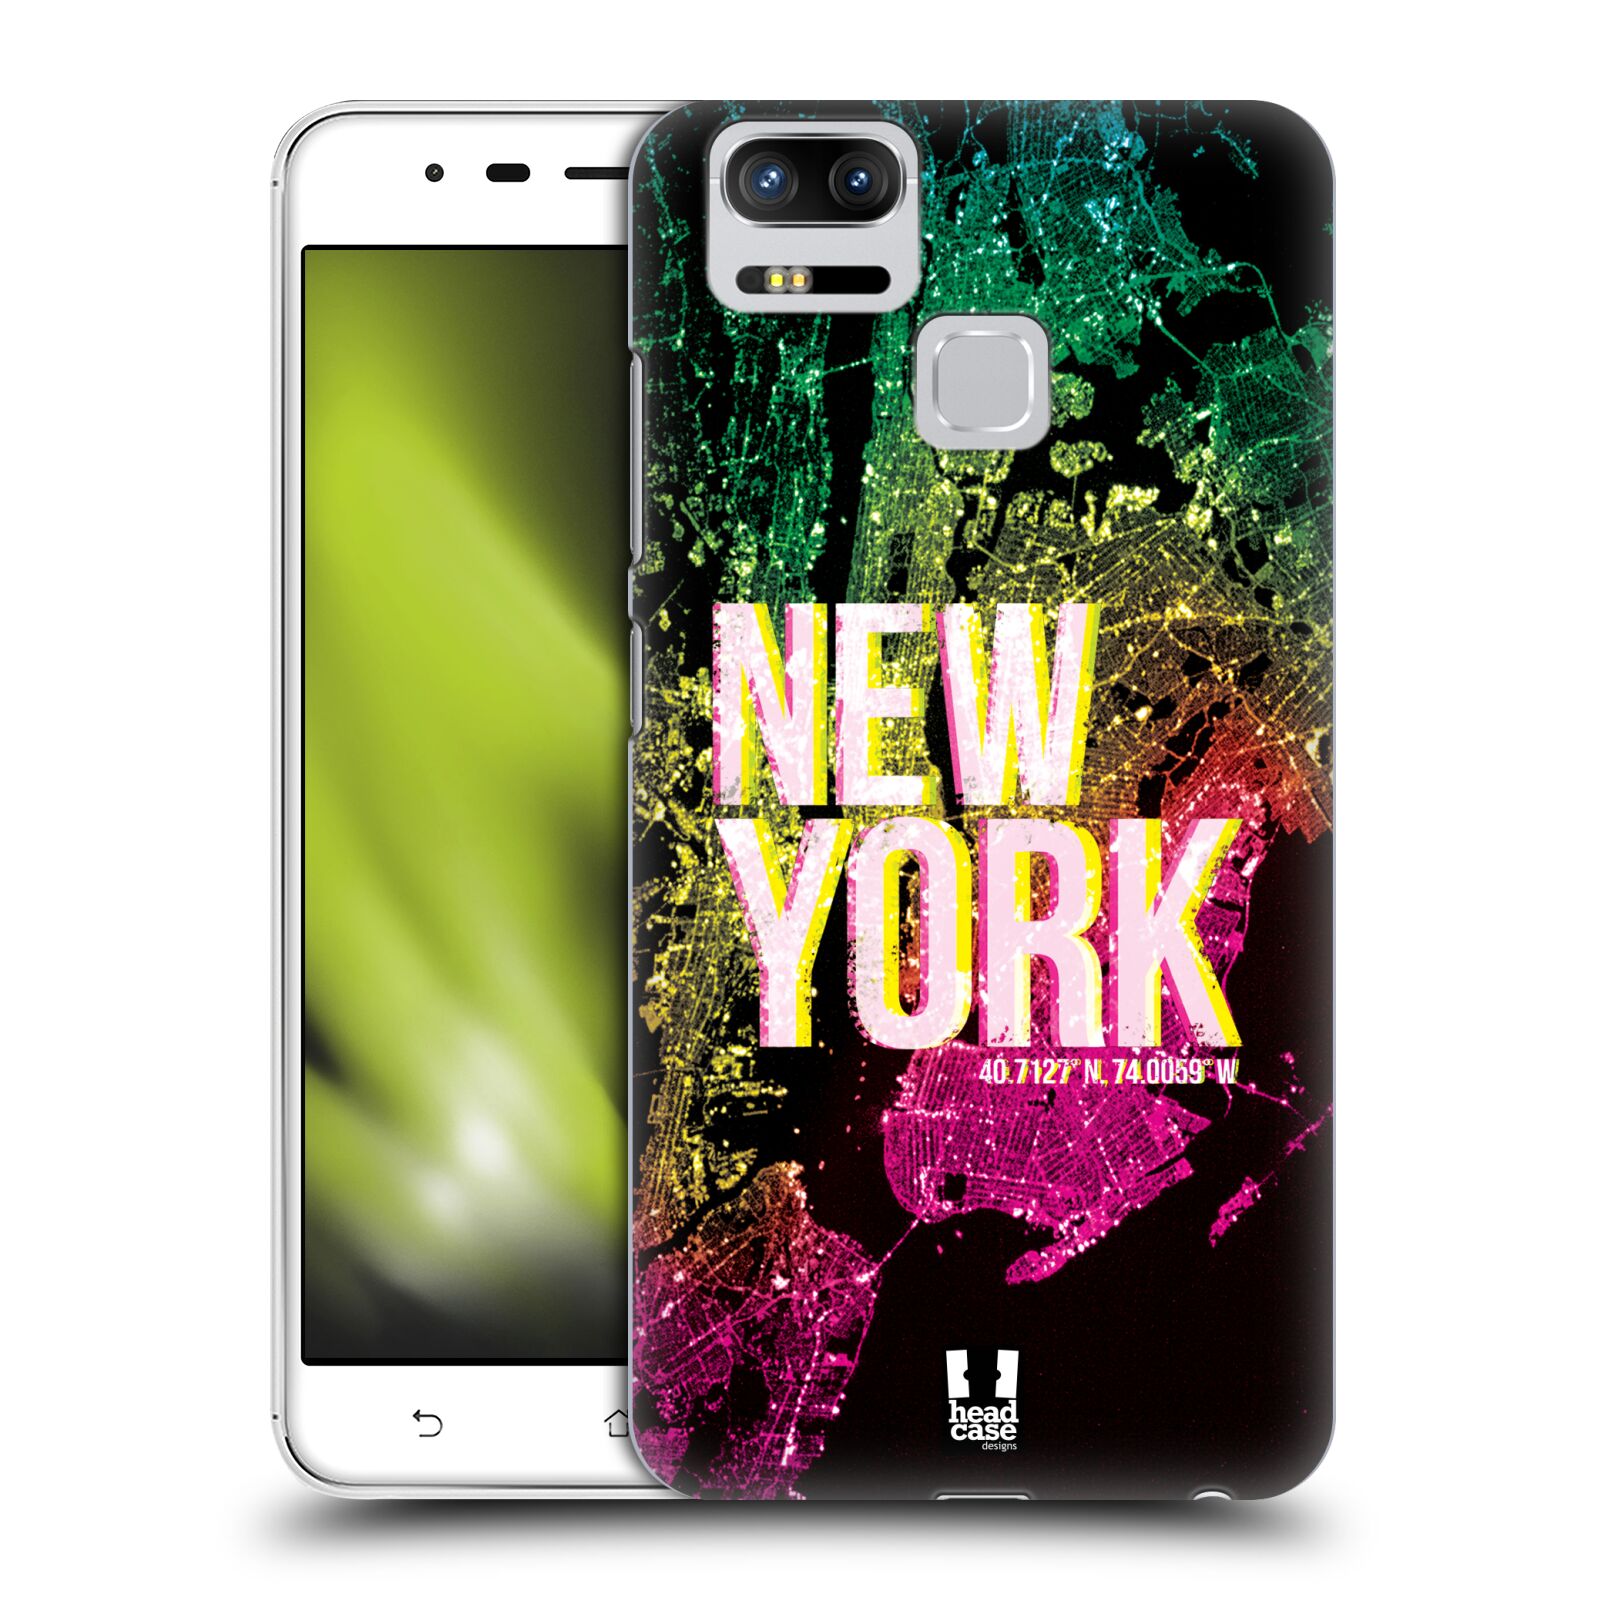 HEAD CASE plastový obal na mobil Asus Zenfone 3 Zoom ZE553KL vzor Světla známých měst, Satelitní snímky USA, NEW YORK